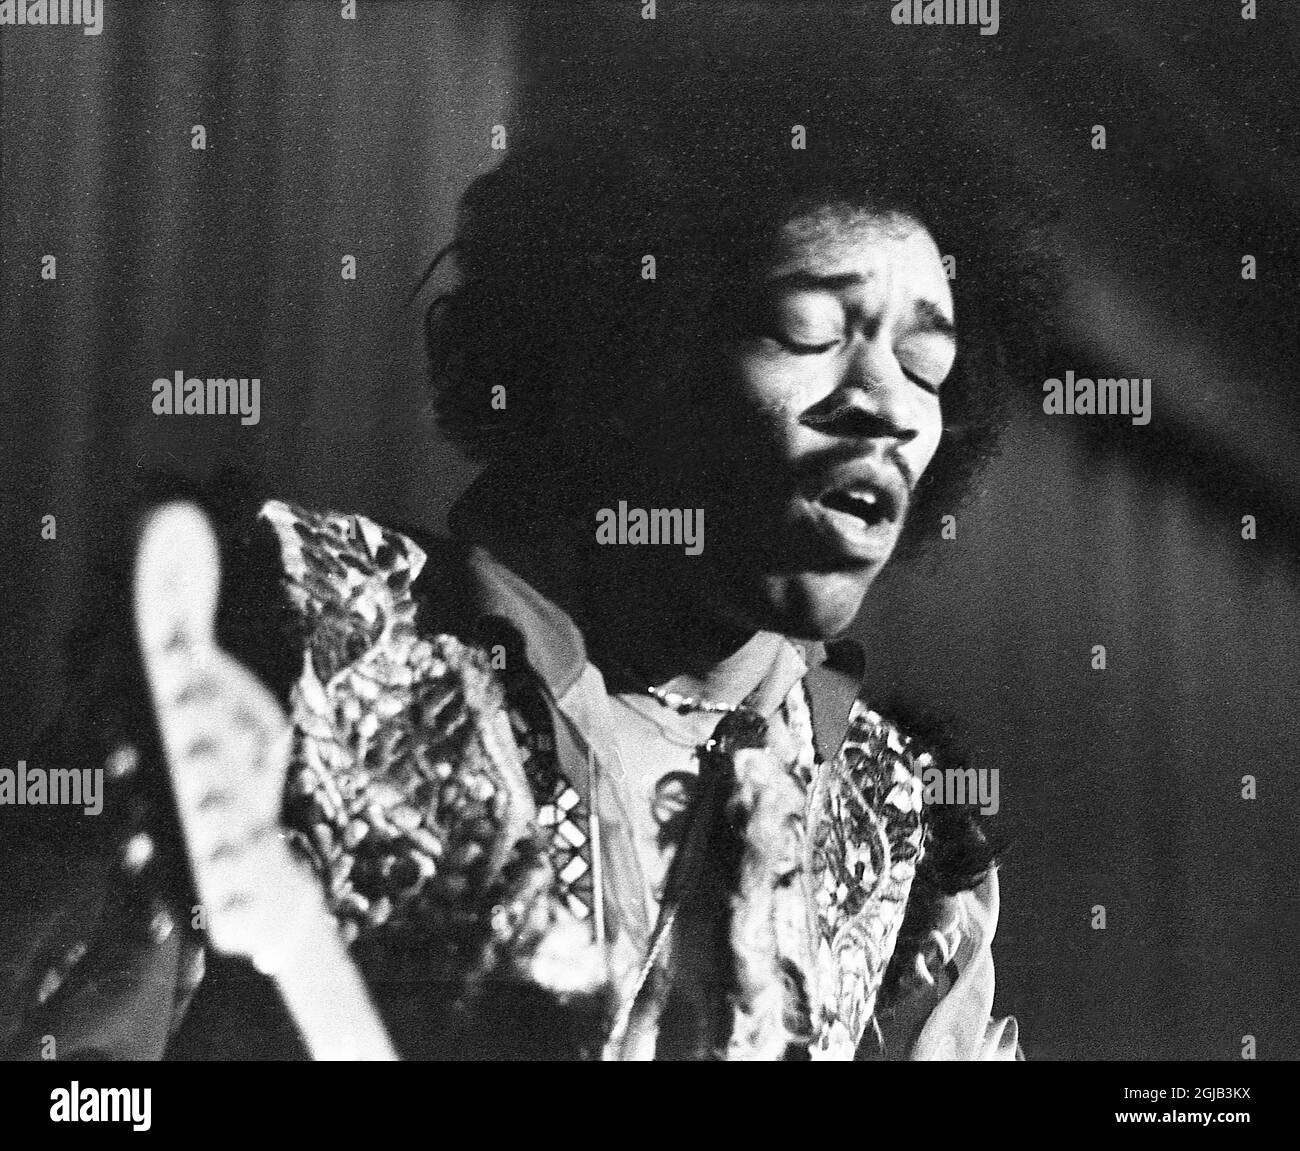 GÖTEBORG 1969-01-08. Jimi Hendrix, artiste, musicien, compositeur et guitariste des États-Unis, se produit lors d'un concert à Göteborg en Suède 1969. Foto: Erik Karlsson / Expressen / TT / Kod: 192 **SUÈDE OUT* Banque D'Images